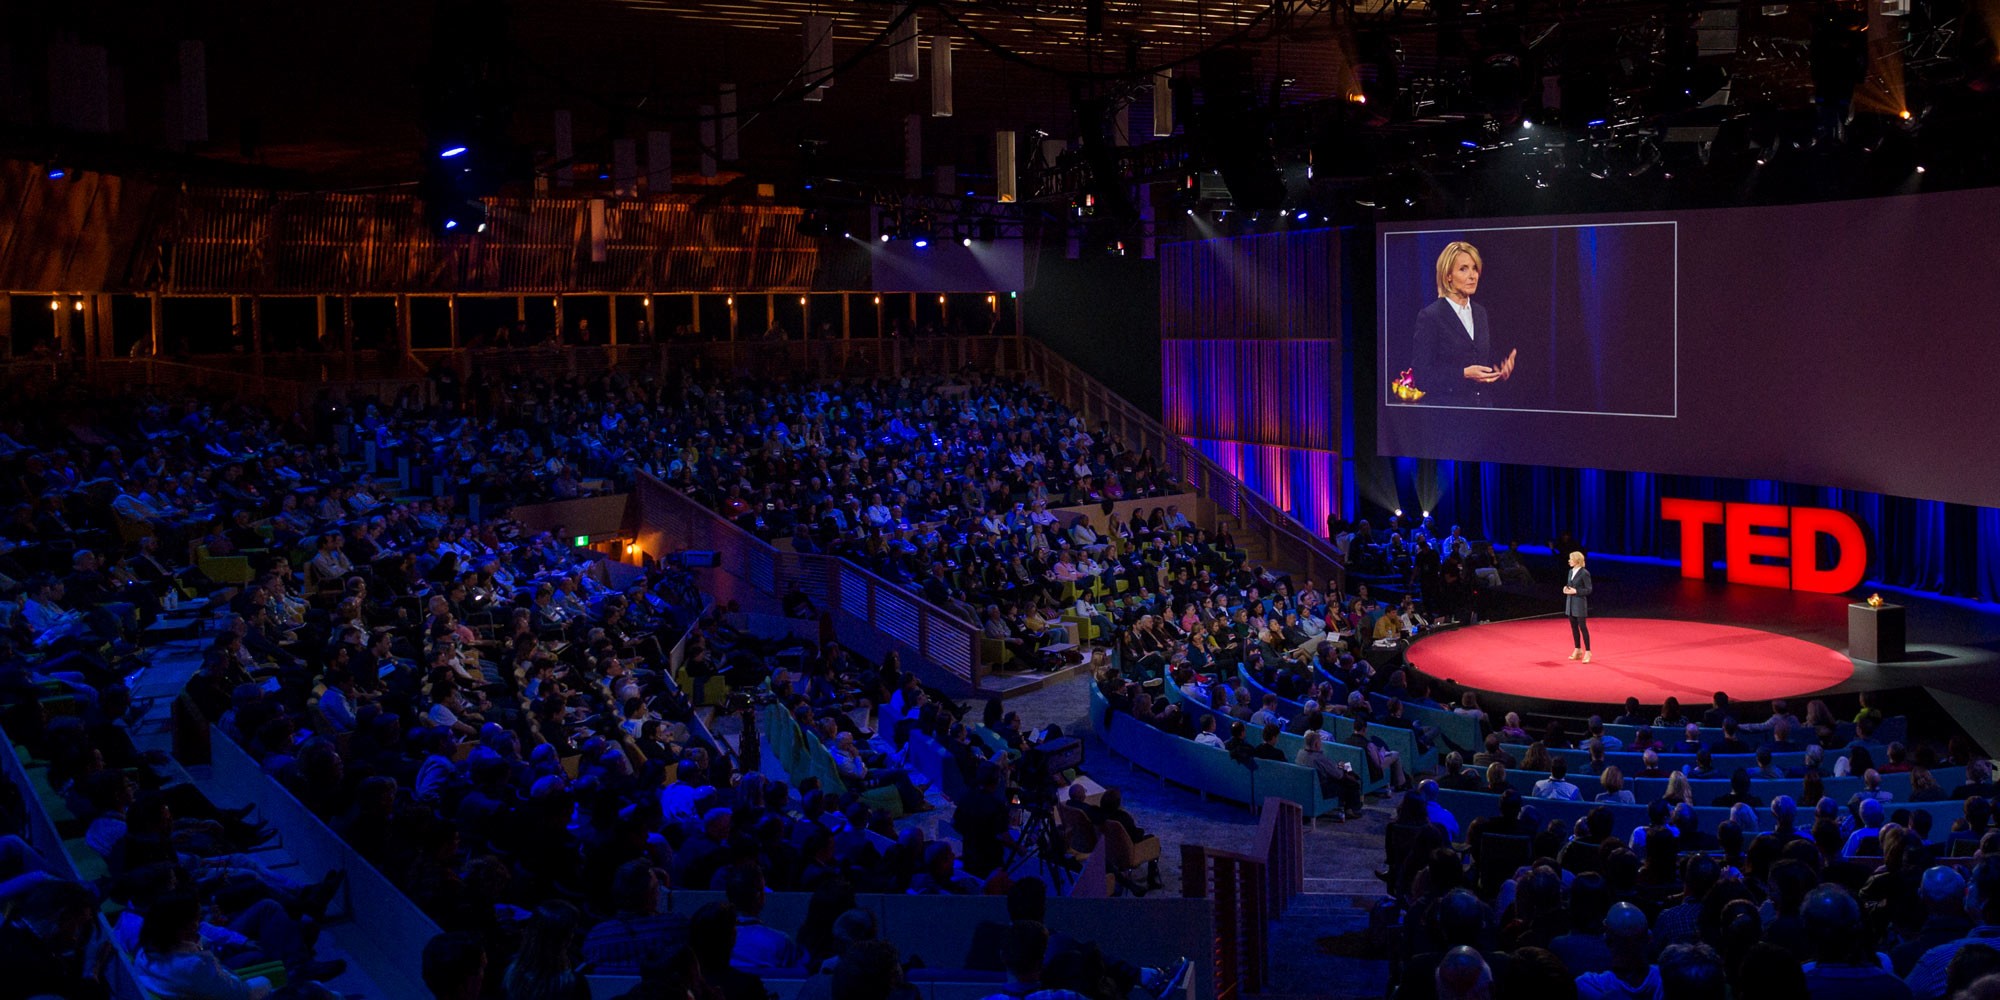 Ted Conferences Linkedin